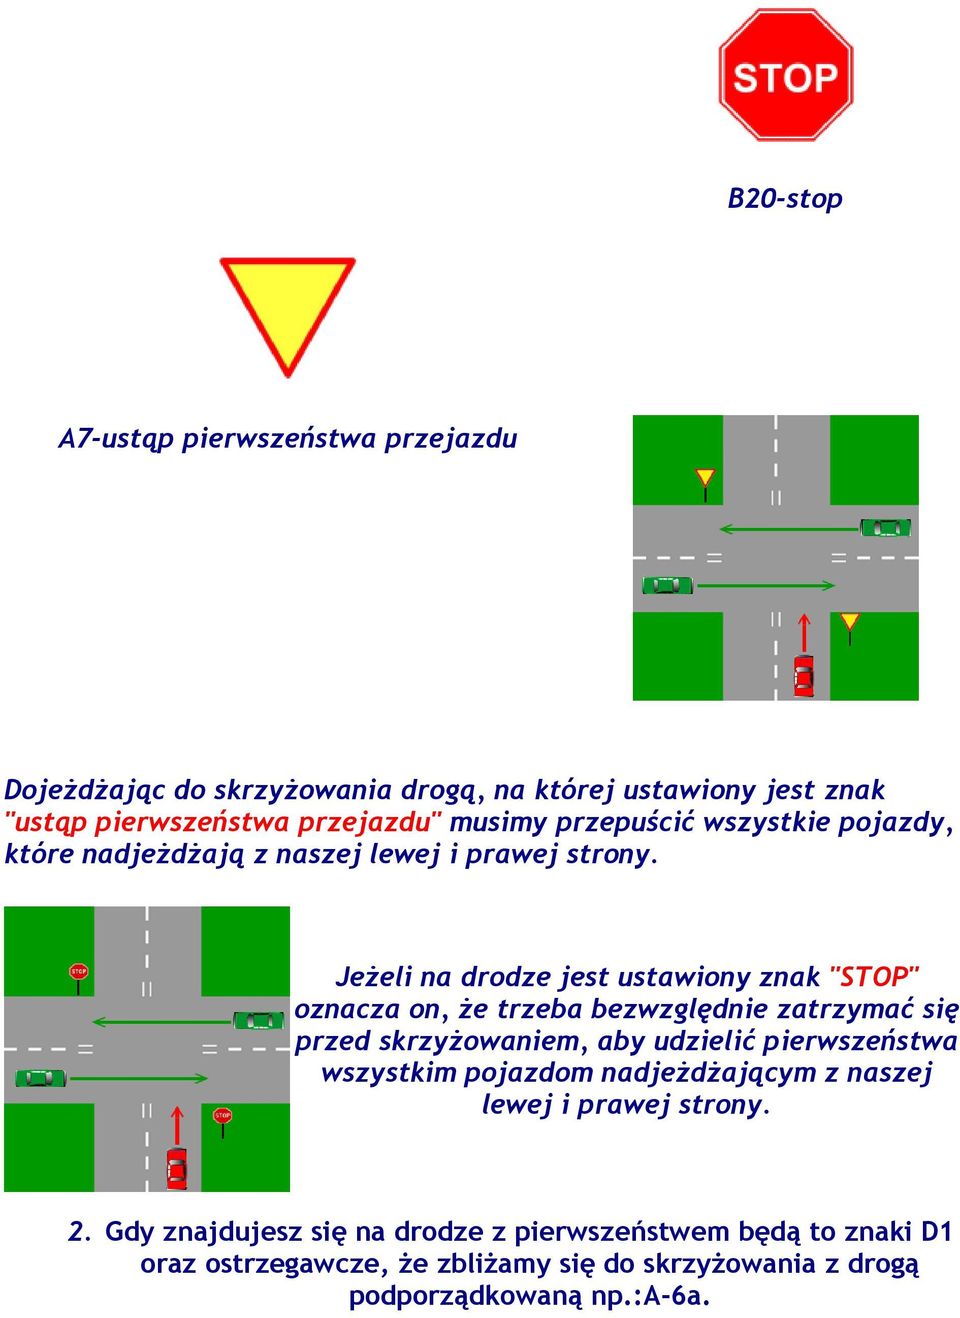 Jeżeli na drodze jest ustawiony znak "STOP" oznacza on, że trzeba bezwzględnie zatrzymać się przed skrzyżowaniem, aby udzielić pierwszeństwa